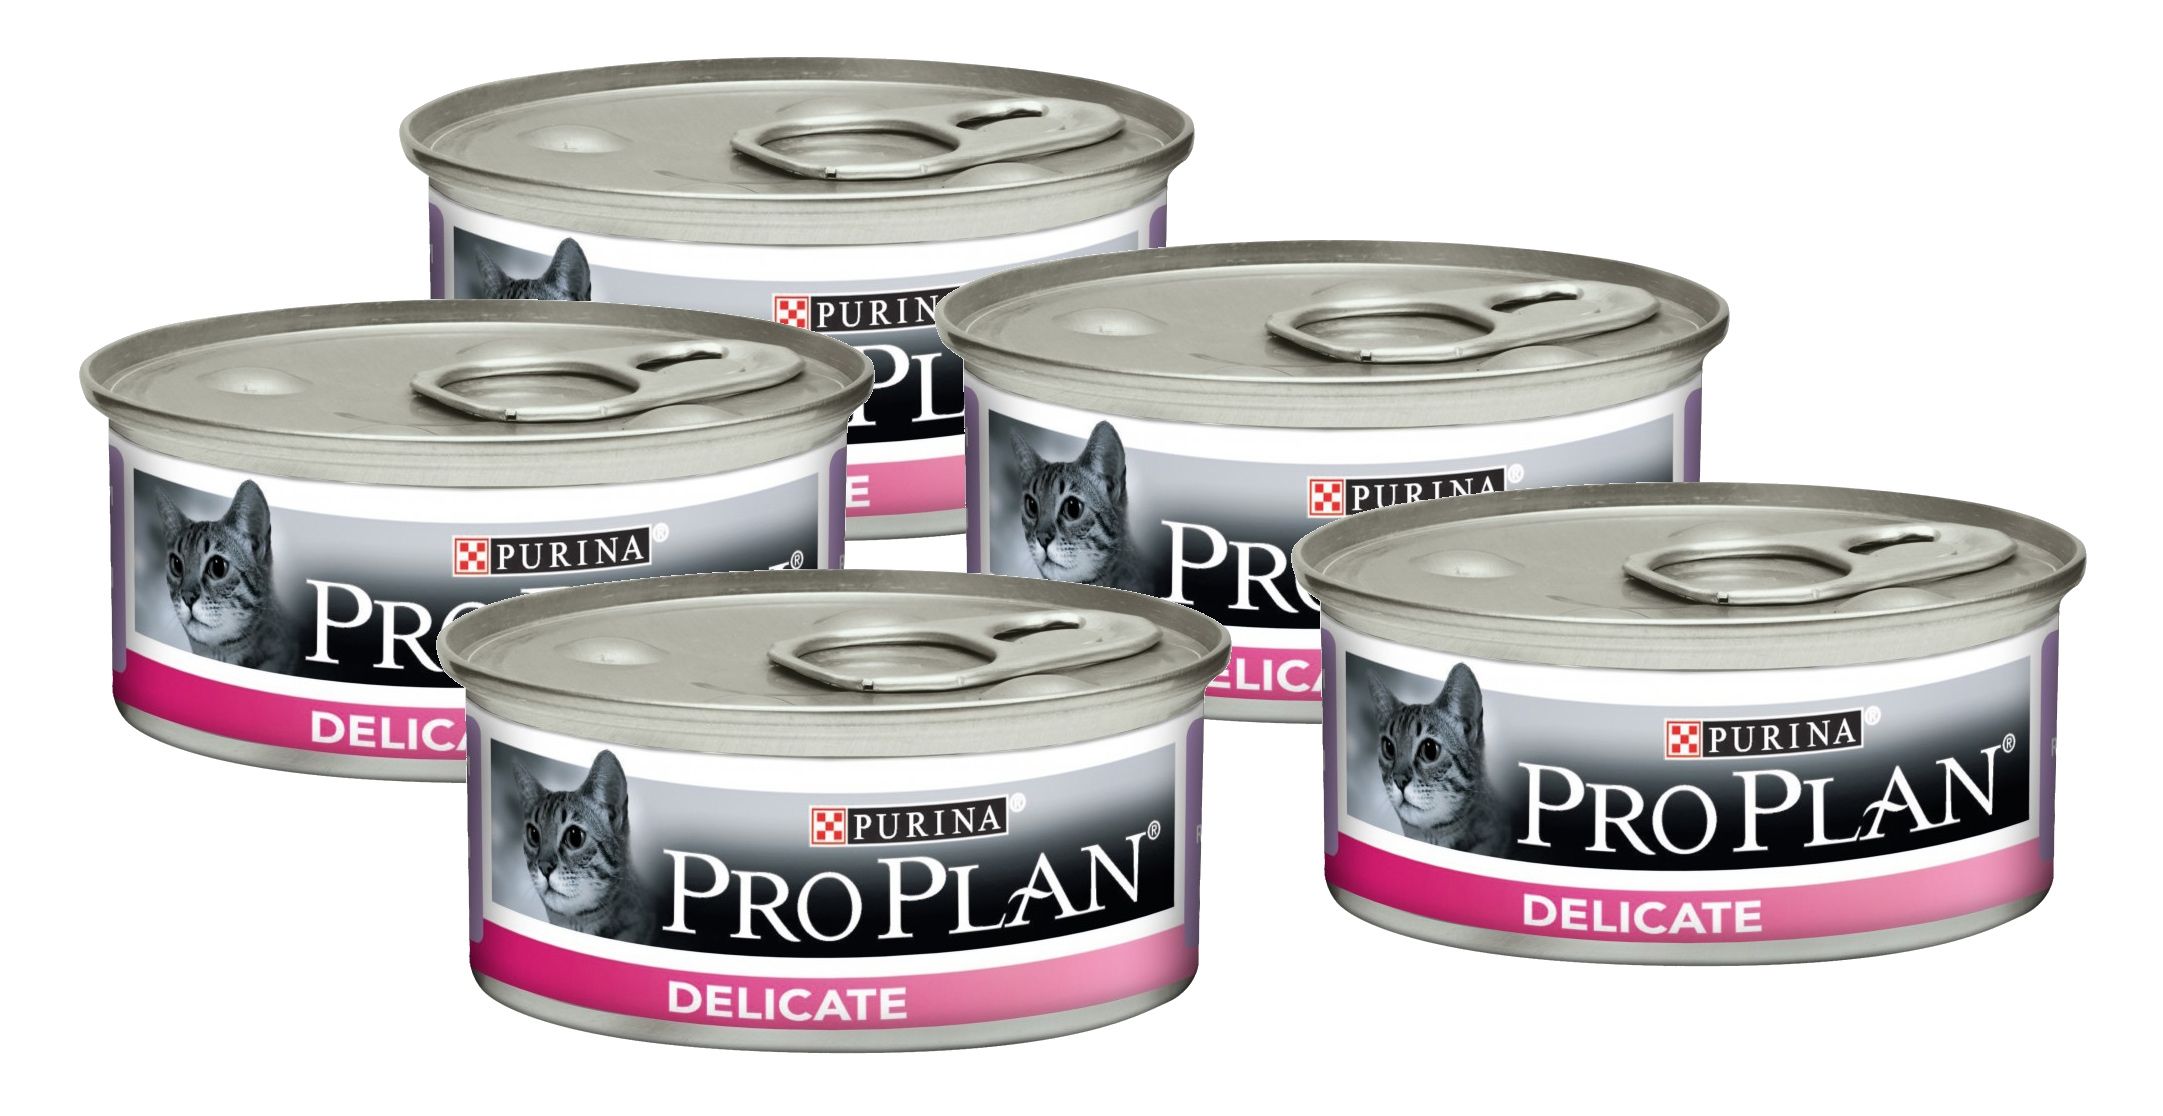 Купить корм проплан спб. Pro Plan delicate для кошек консервы. Purina Pro Plan консервы для кошек. Консервы для кошек Pro Plan delicate, индейка, 85г. Пурина Деликат консервы с индейкой для кошек.